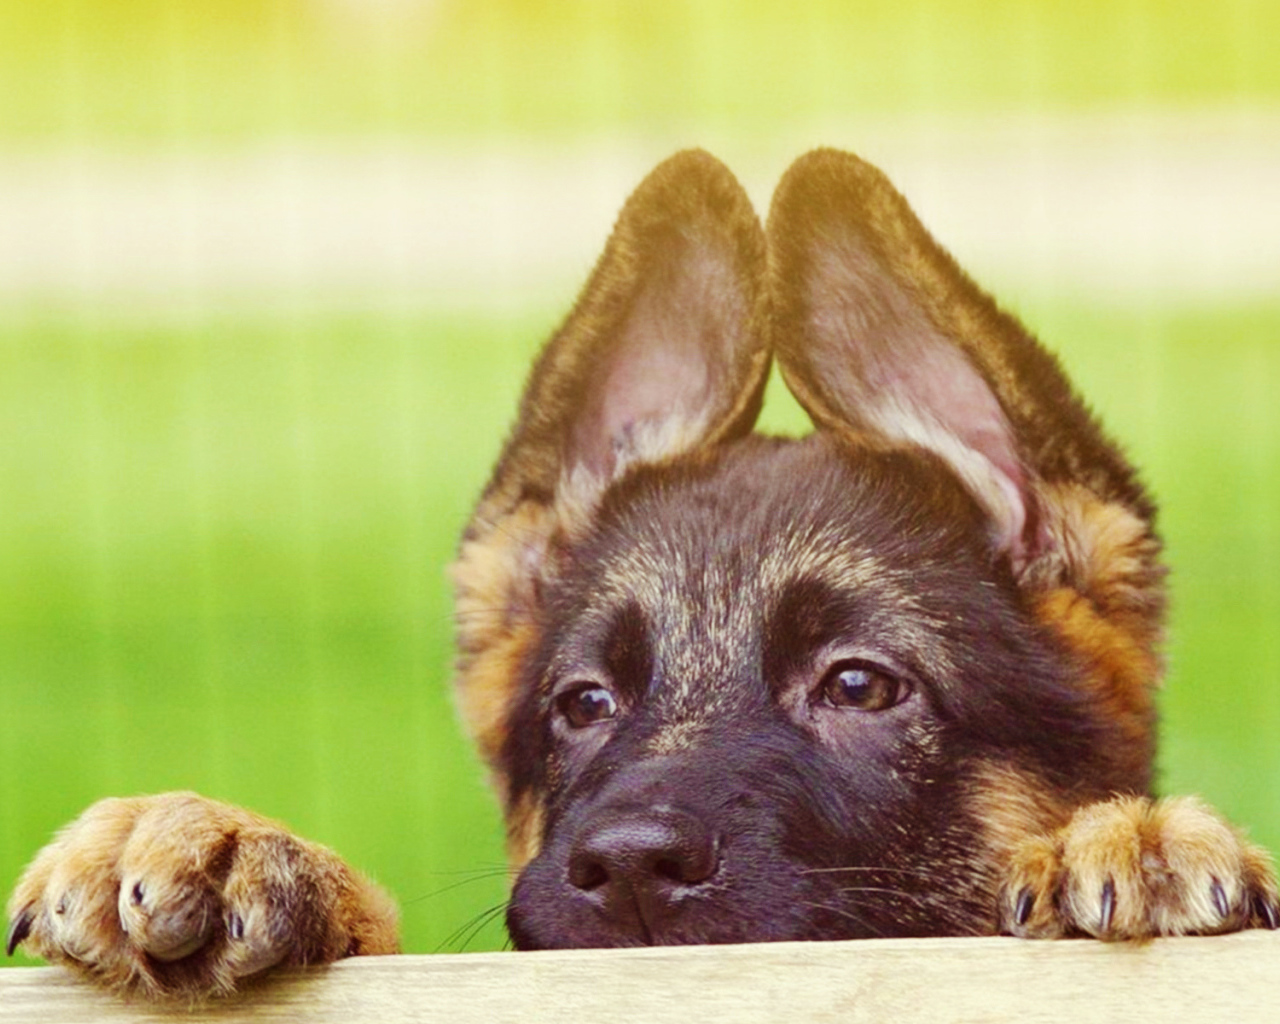 German Shepherd puppy peeking